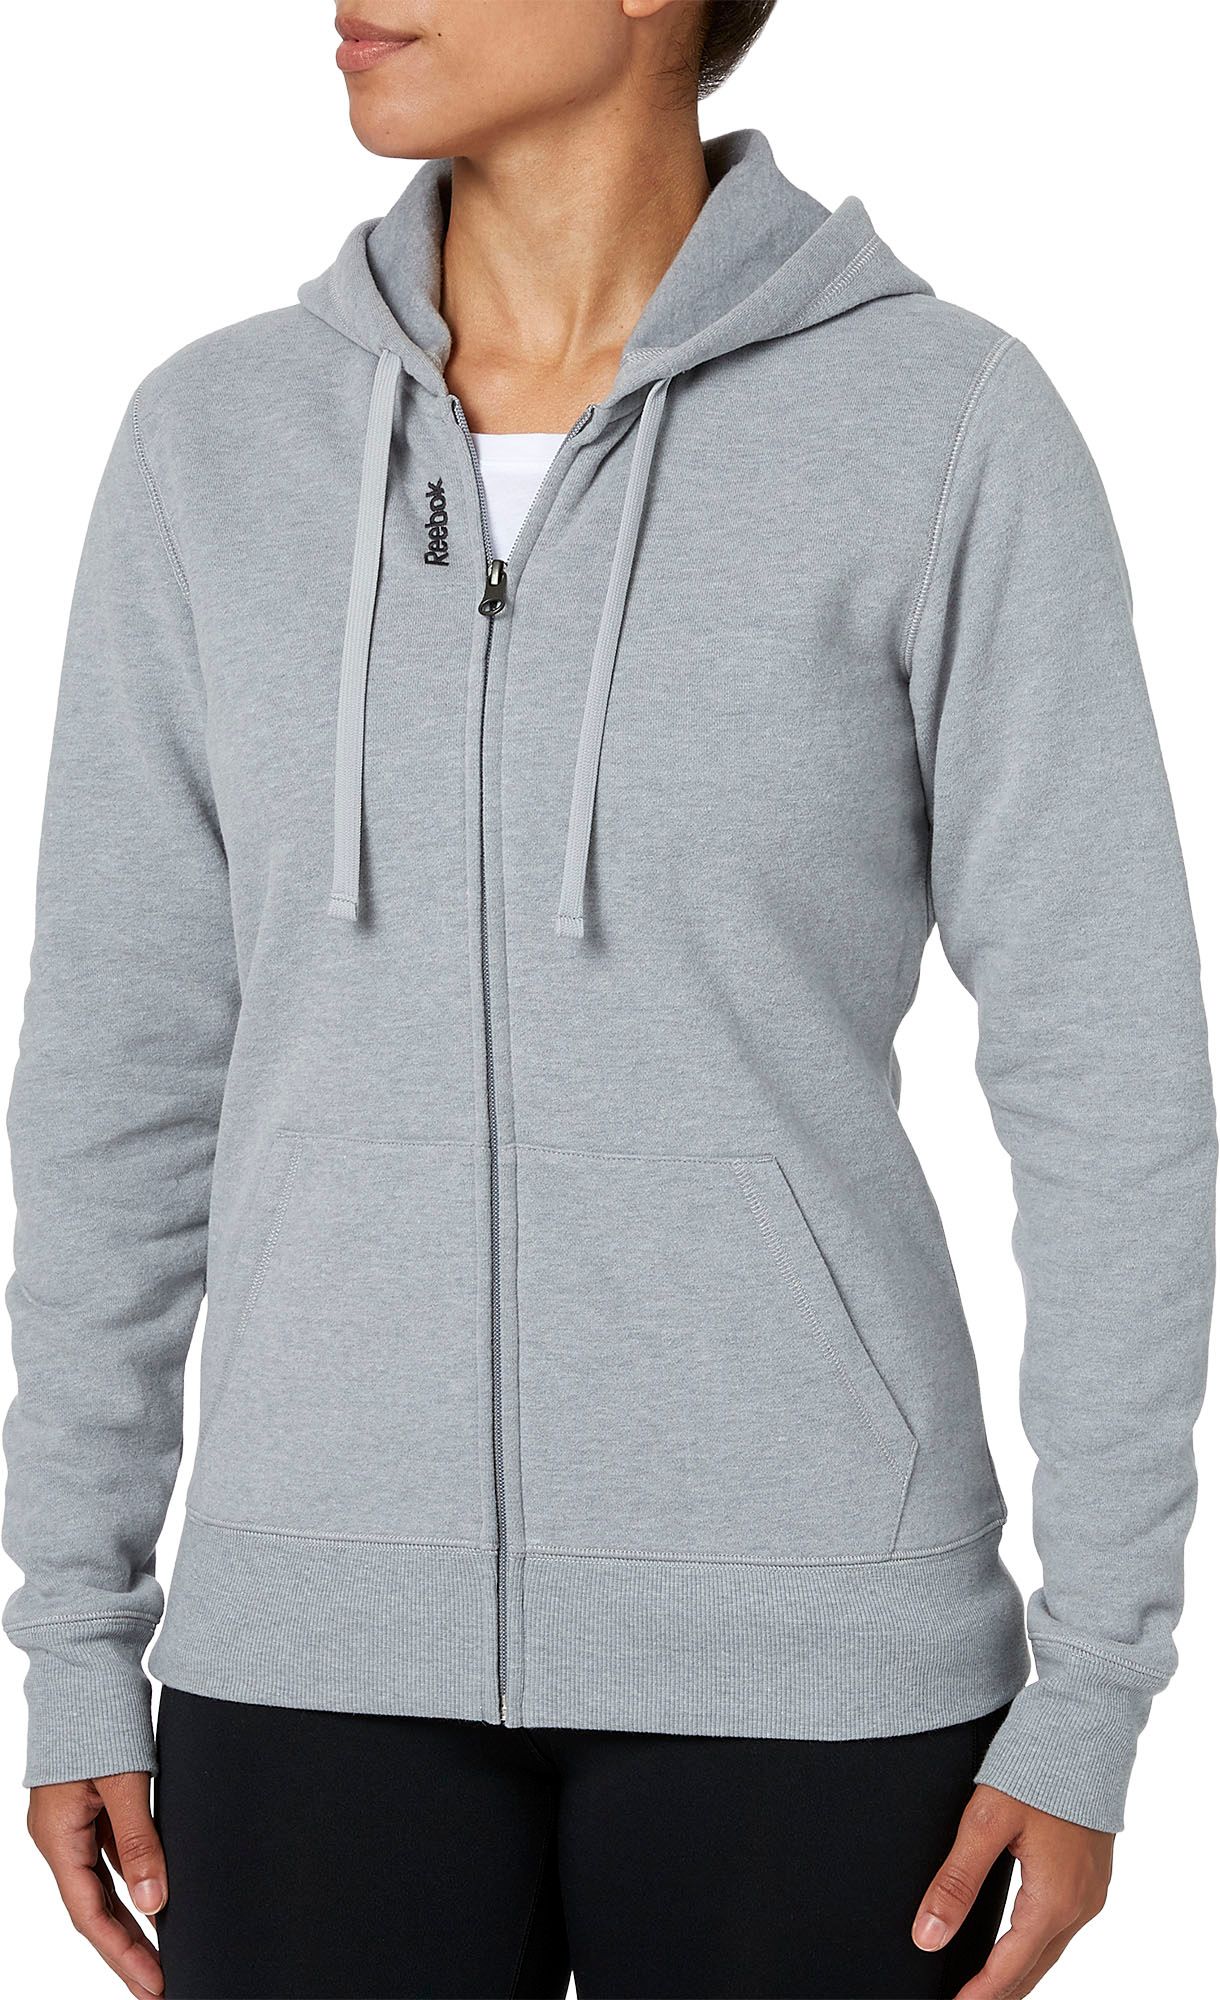 Hoodies & Sweatshirts for Women | DICK'S Sporting Goods